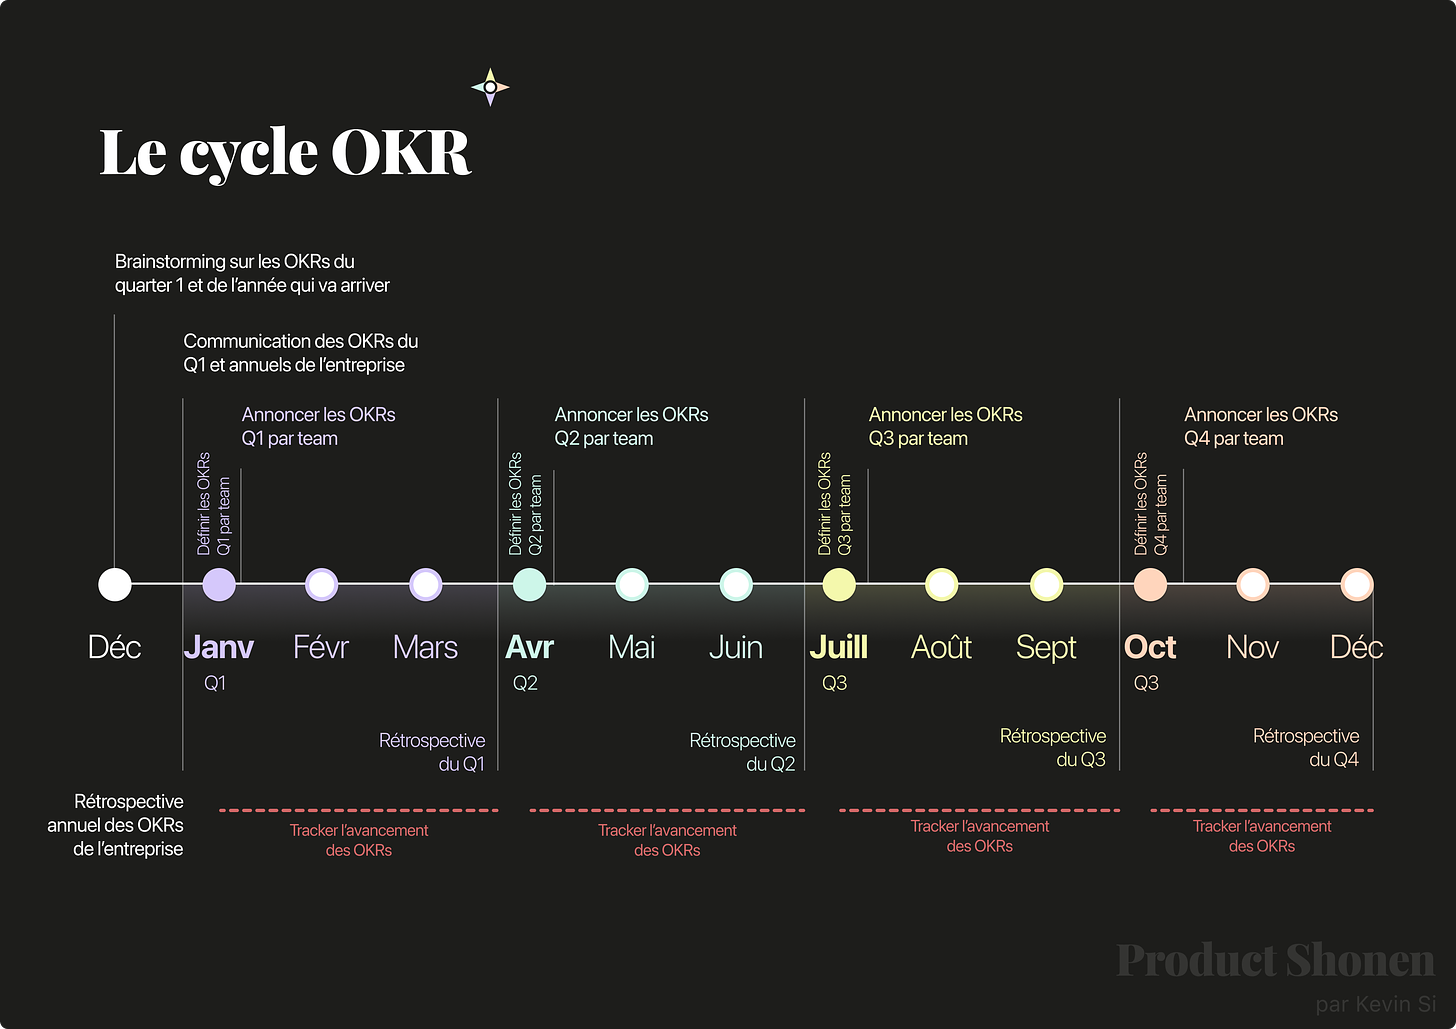 Le cycle OKR pour avoir une bonne vision des process - Product Shonen - Kevin Si